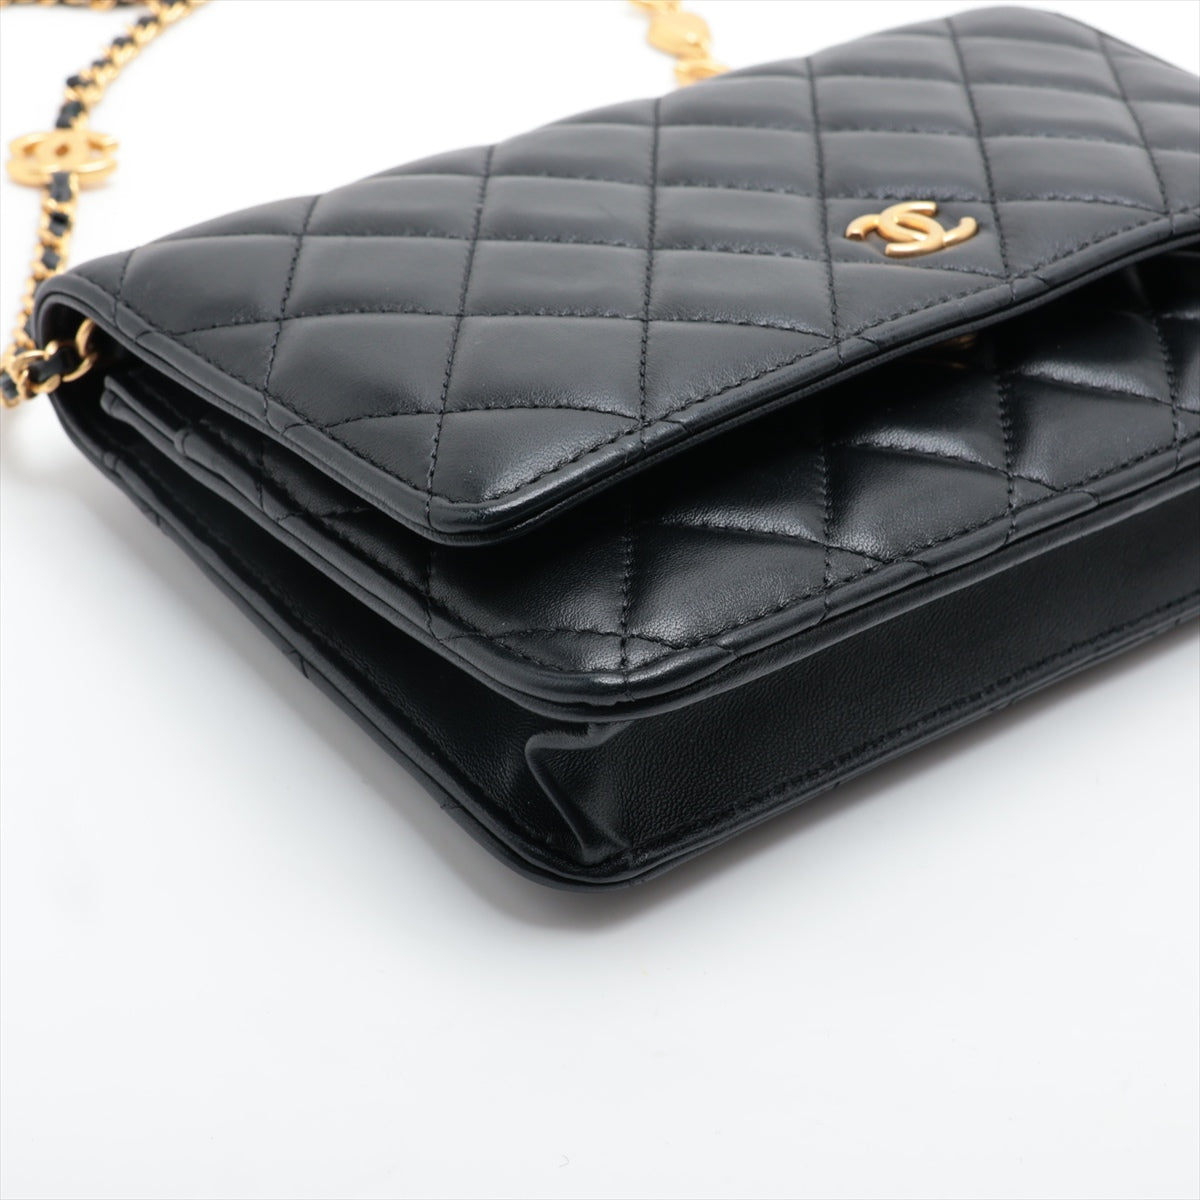 Chanel Matelasse Lambskin Chain Wallet hearts Black Gold Metal Fittings